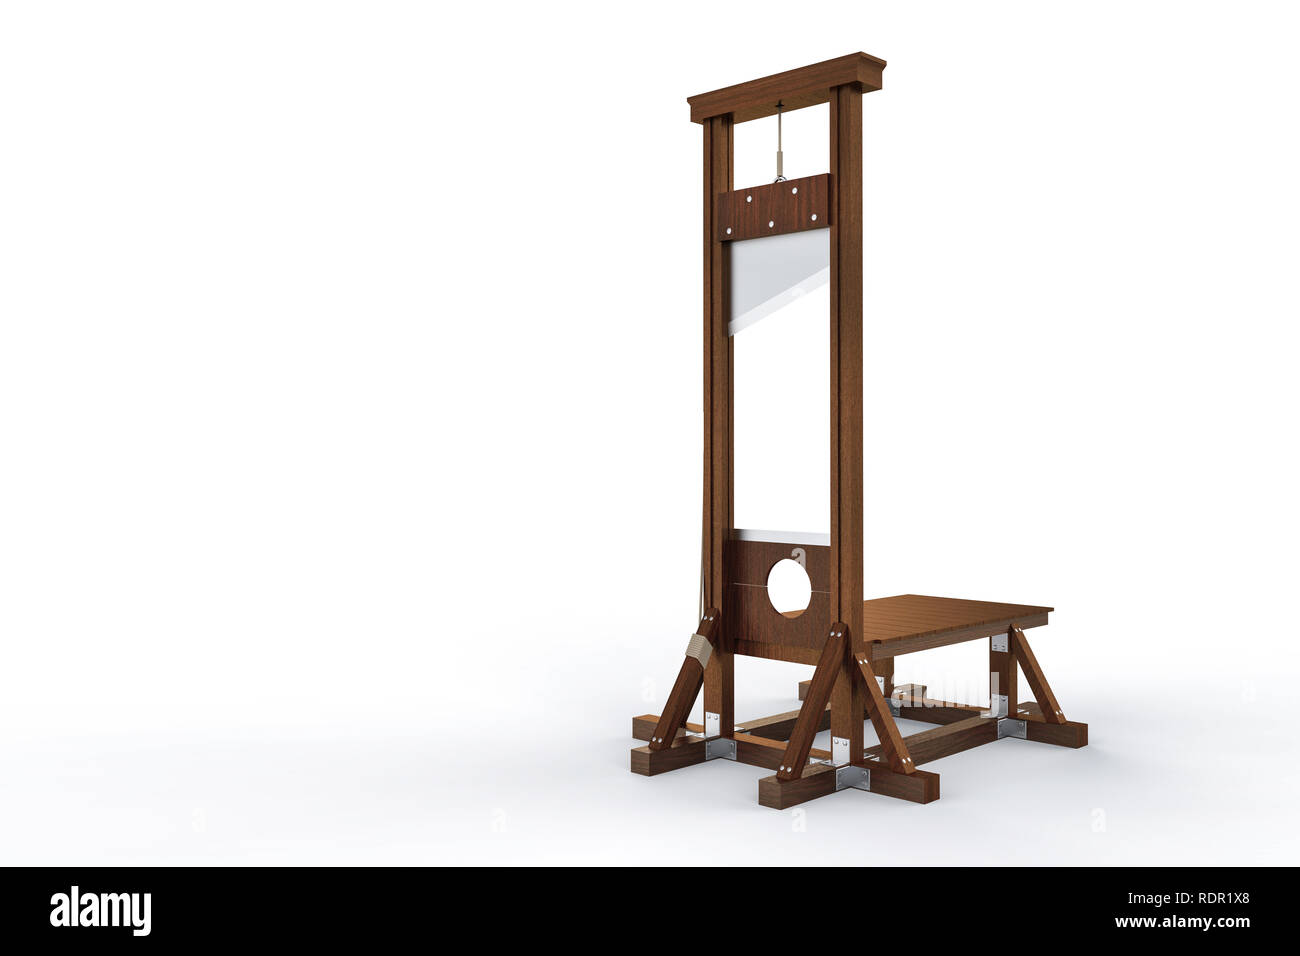 Tableau de la guillotine pour infliger la peine capitale par décapitation isolé sur fond blanc. Instrument en bois pour l'exécution Banque D'Images